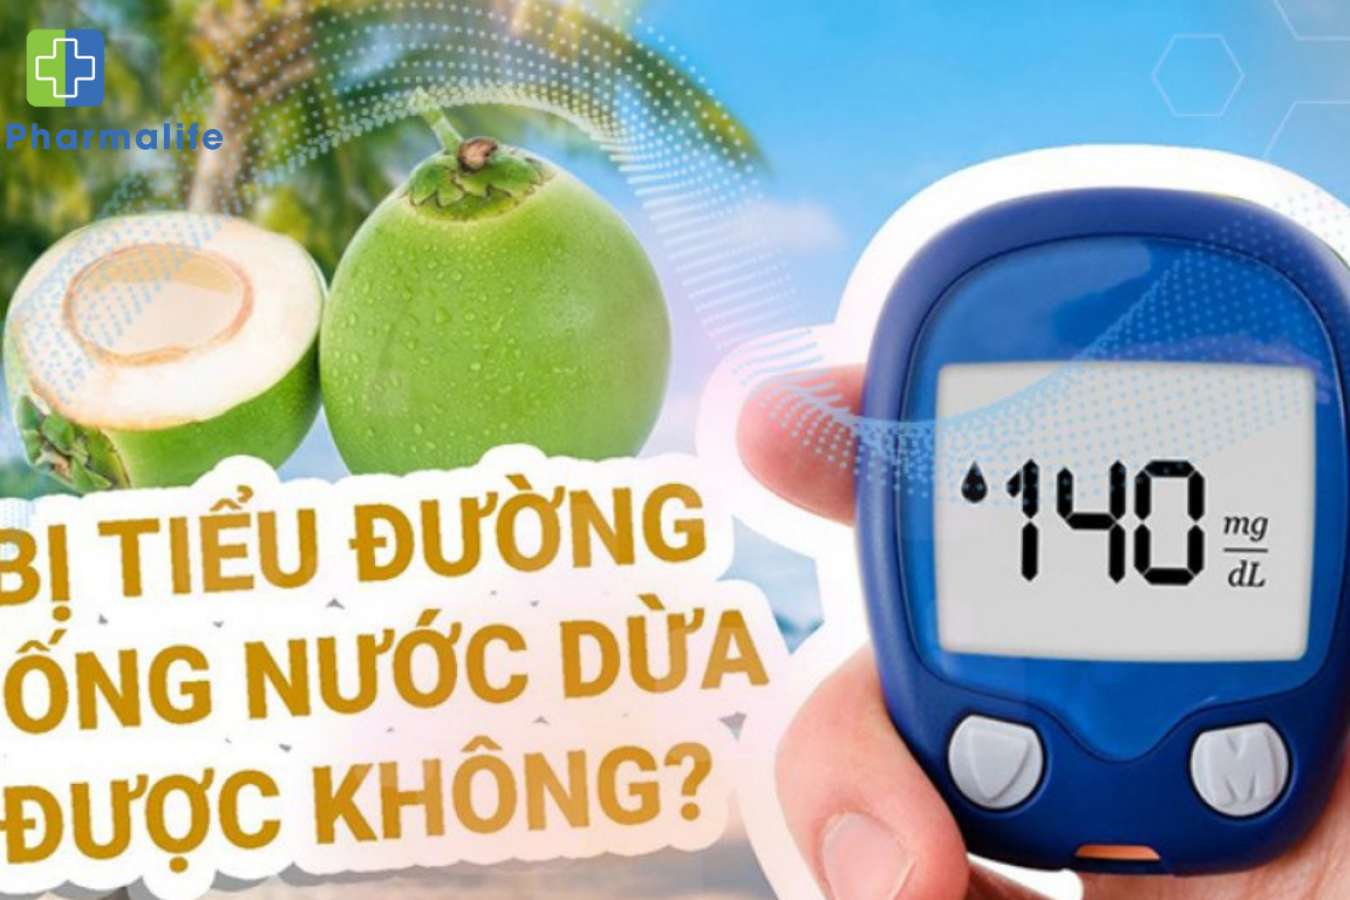 Người mắc bệnh tiểu đường uống nước dừa được không?